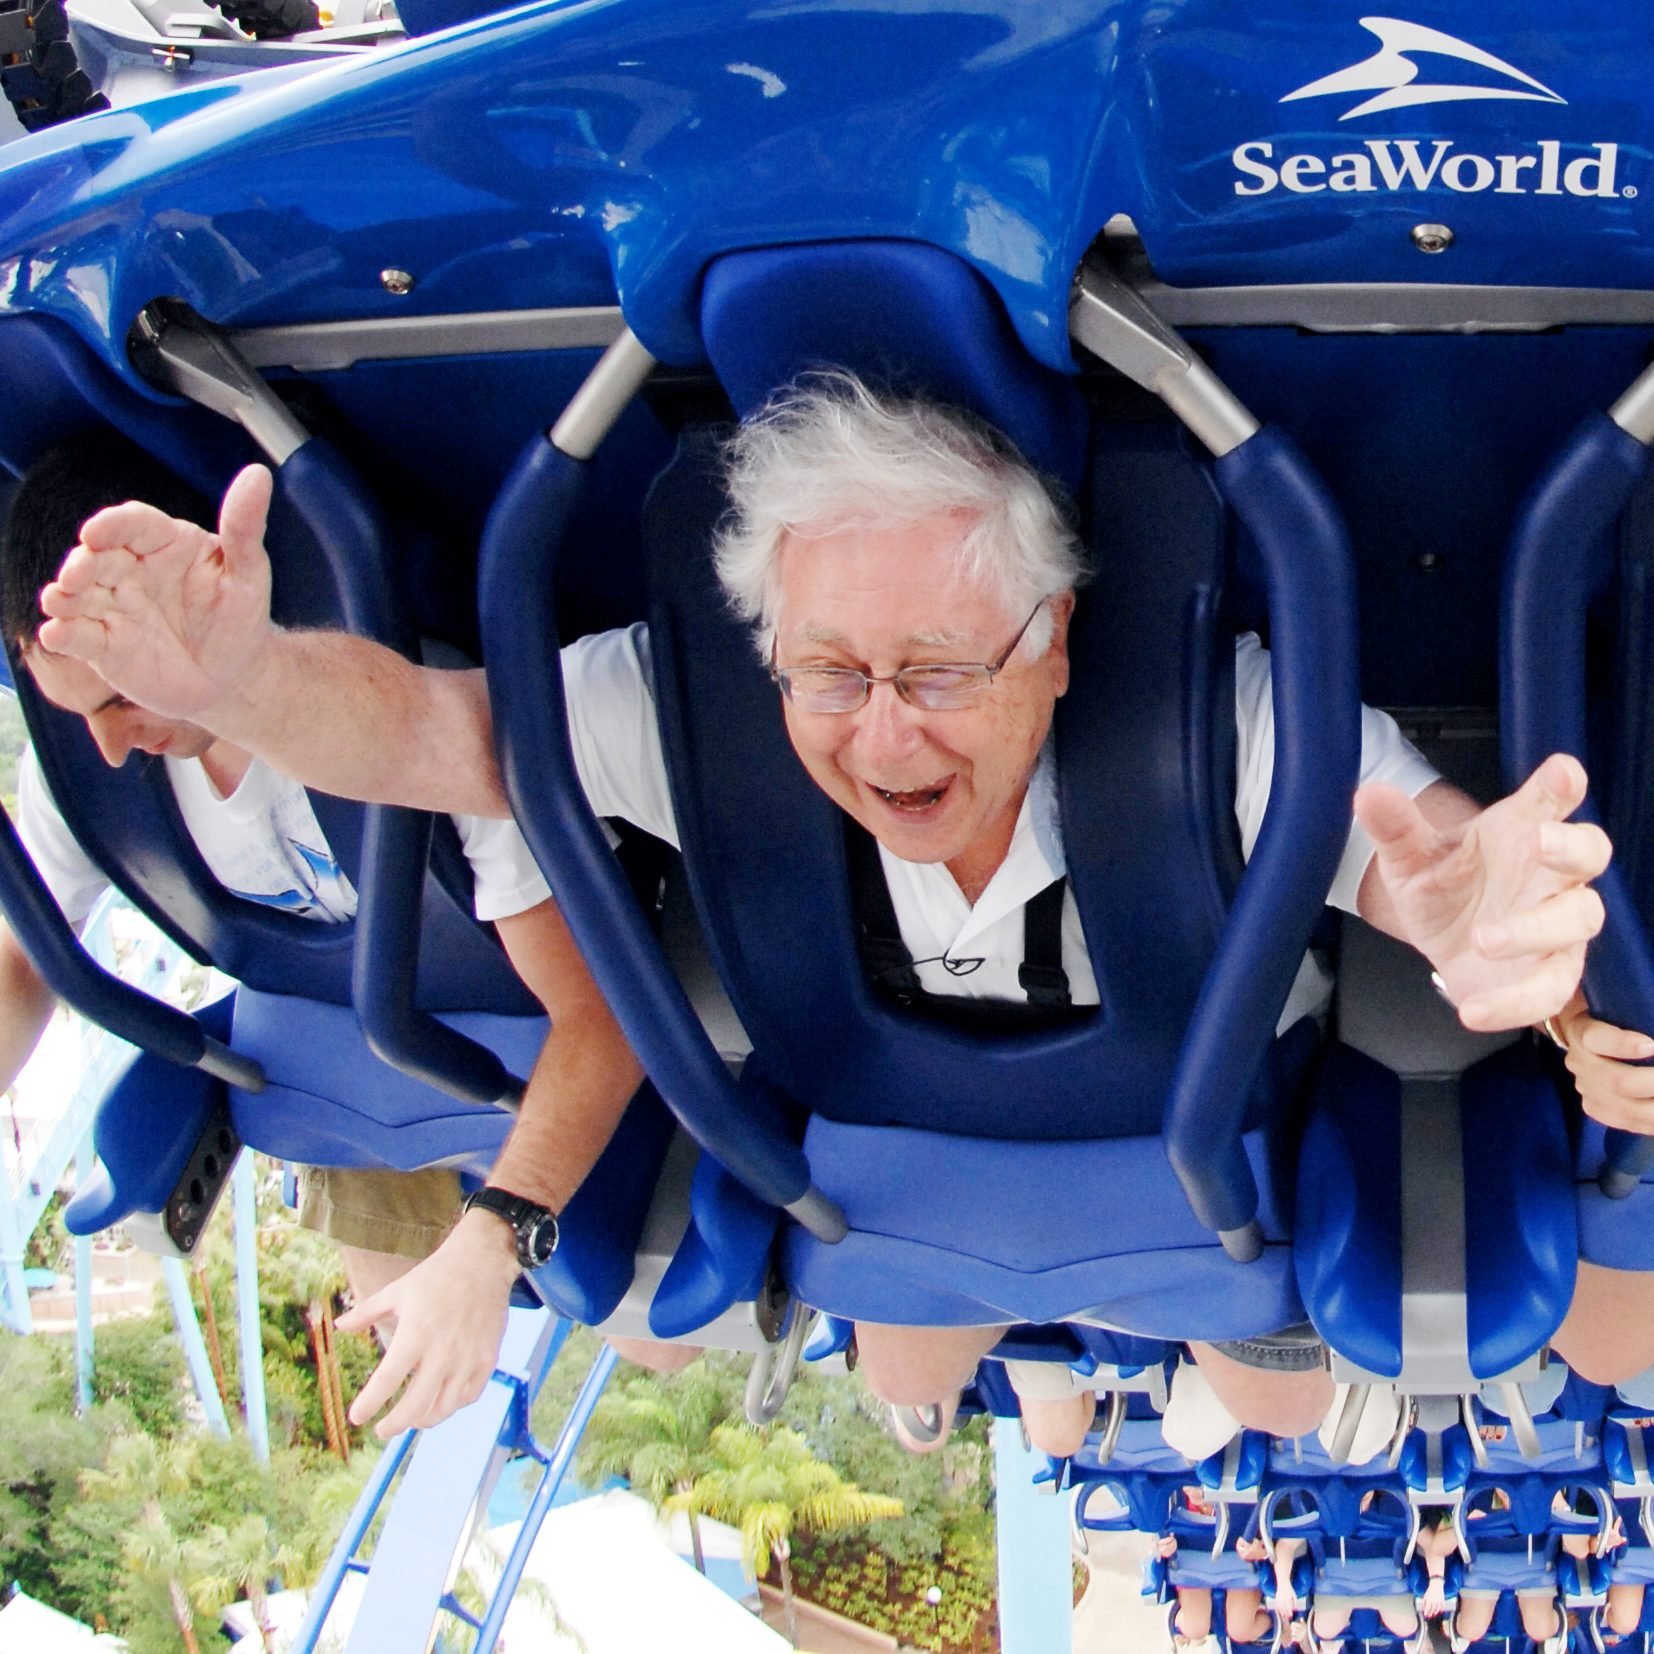 Paul Ruben riding a roller coaster at Seaworld Orlando 